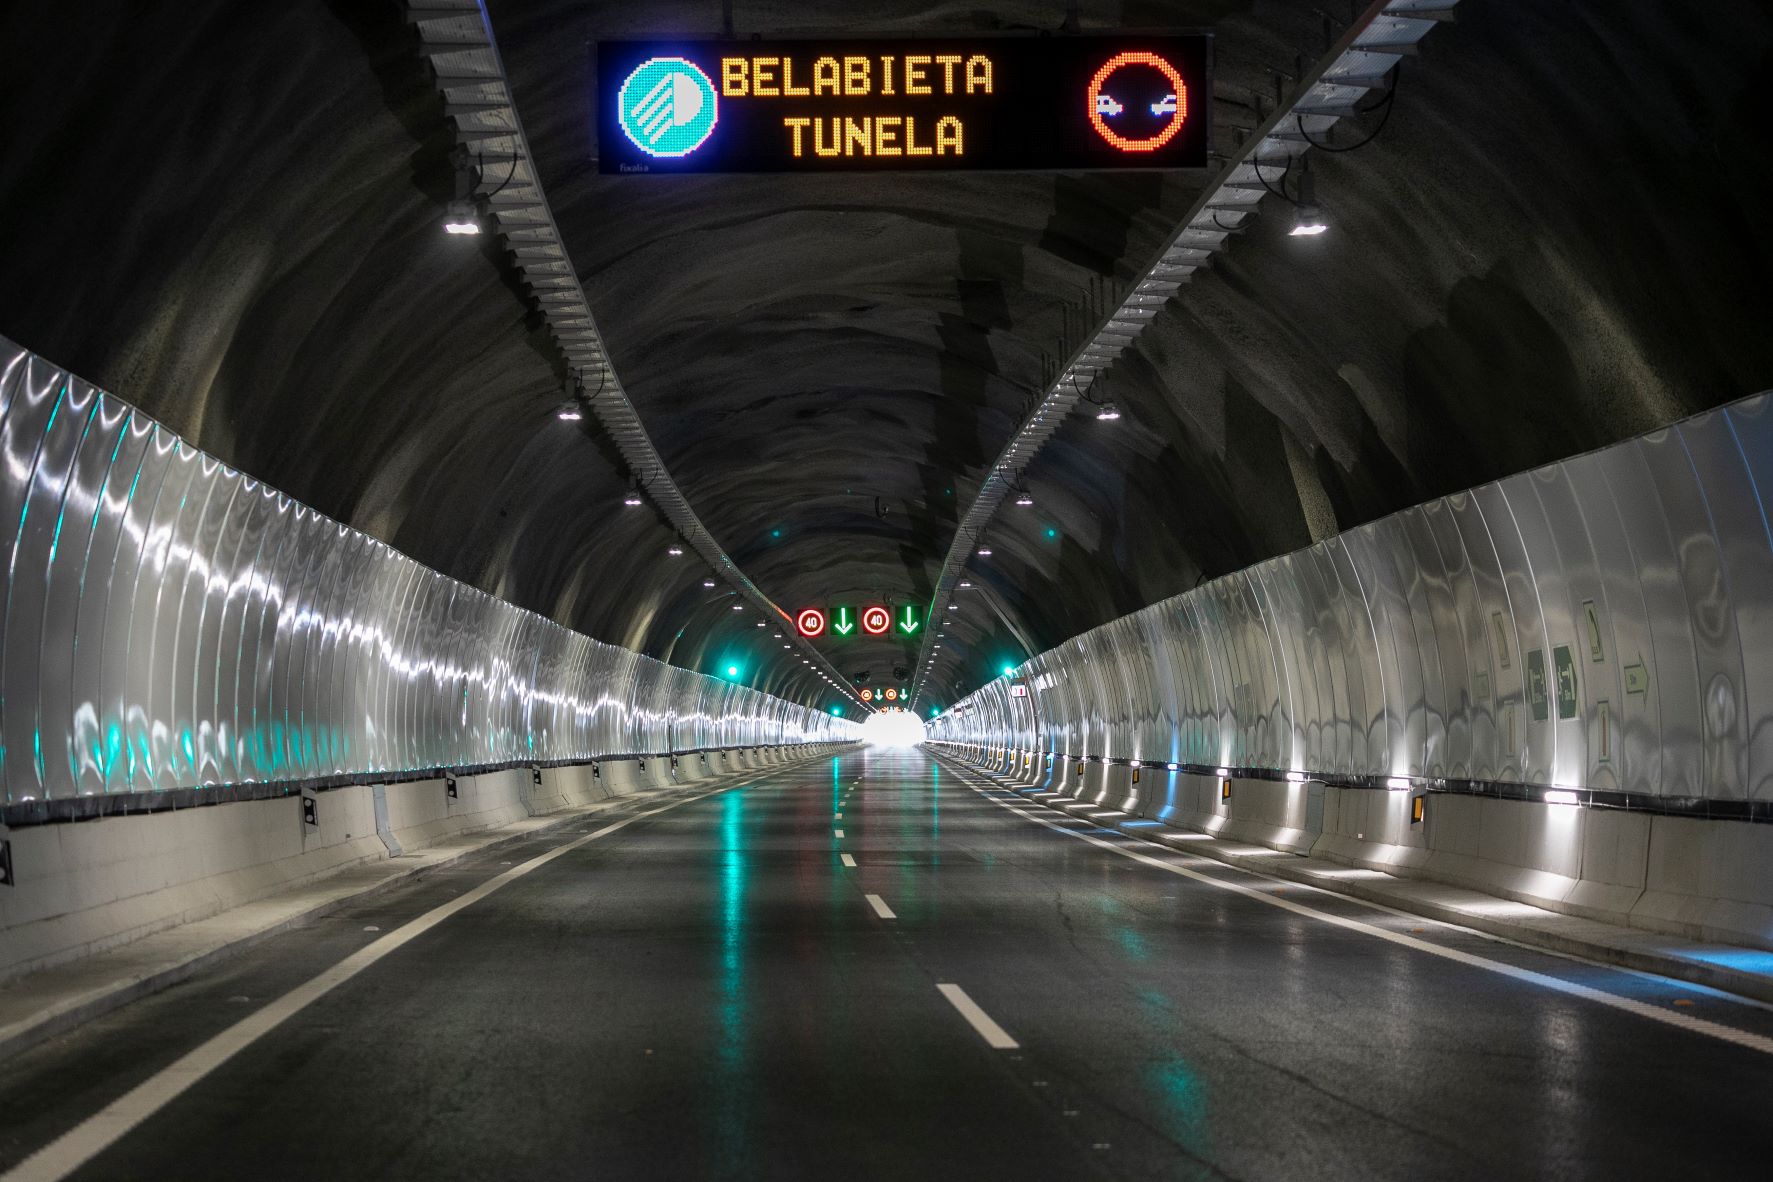 Finaliza la renovación del túnel de Belabieta tras 11 meses de obras